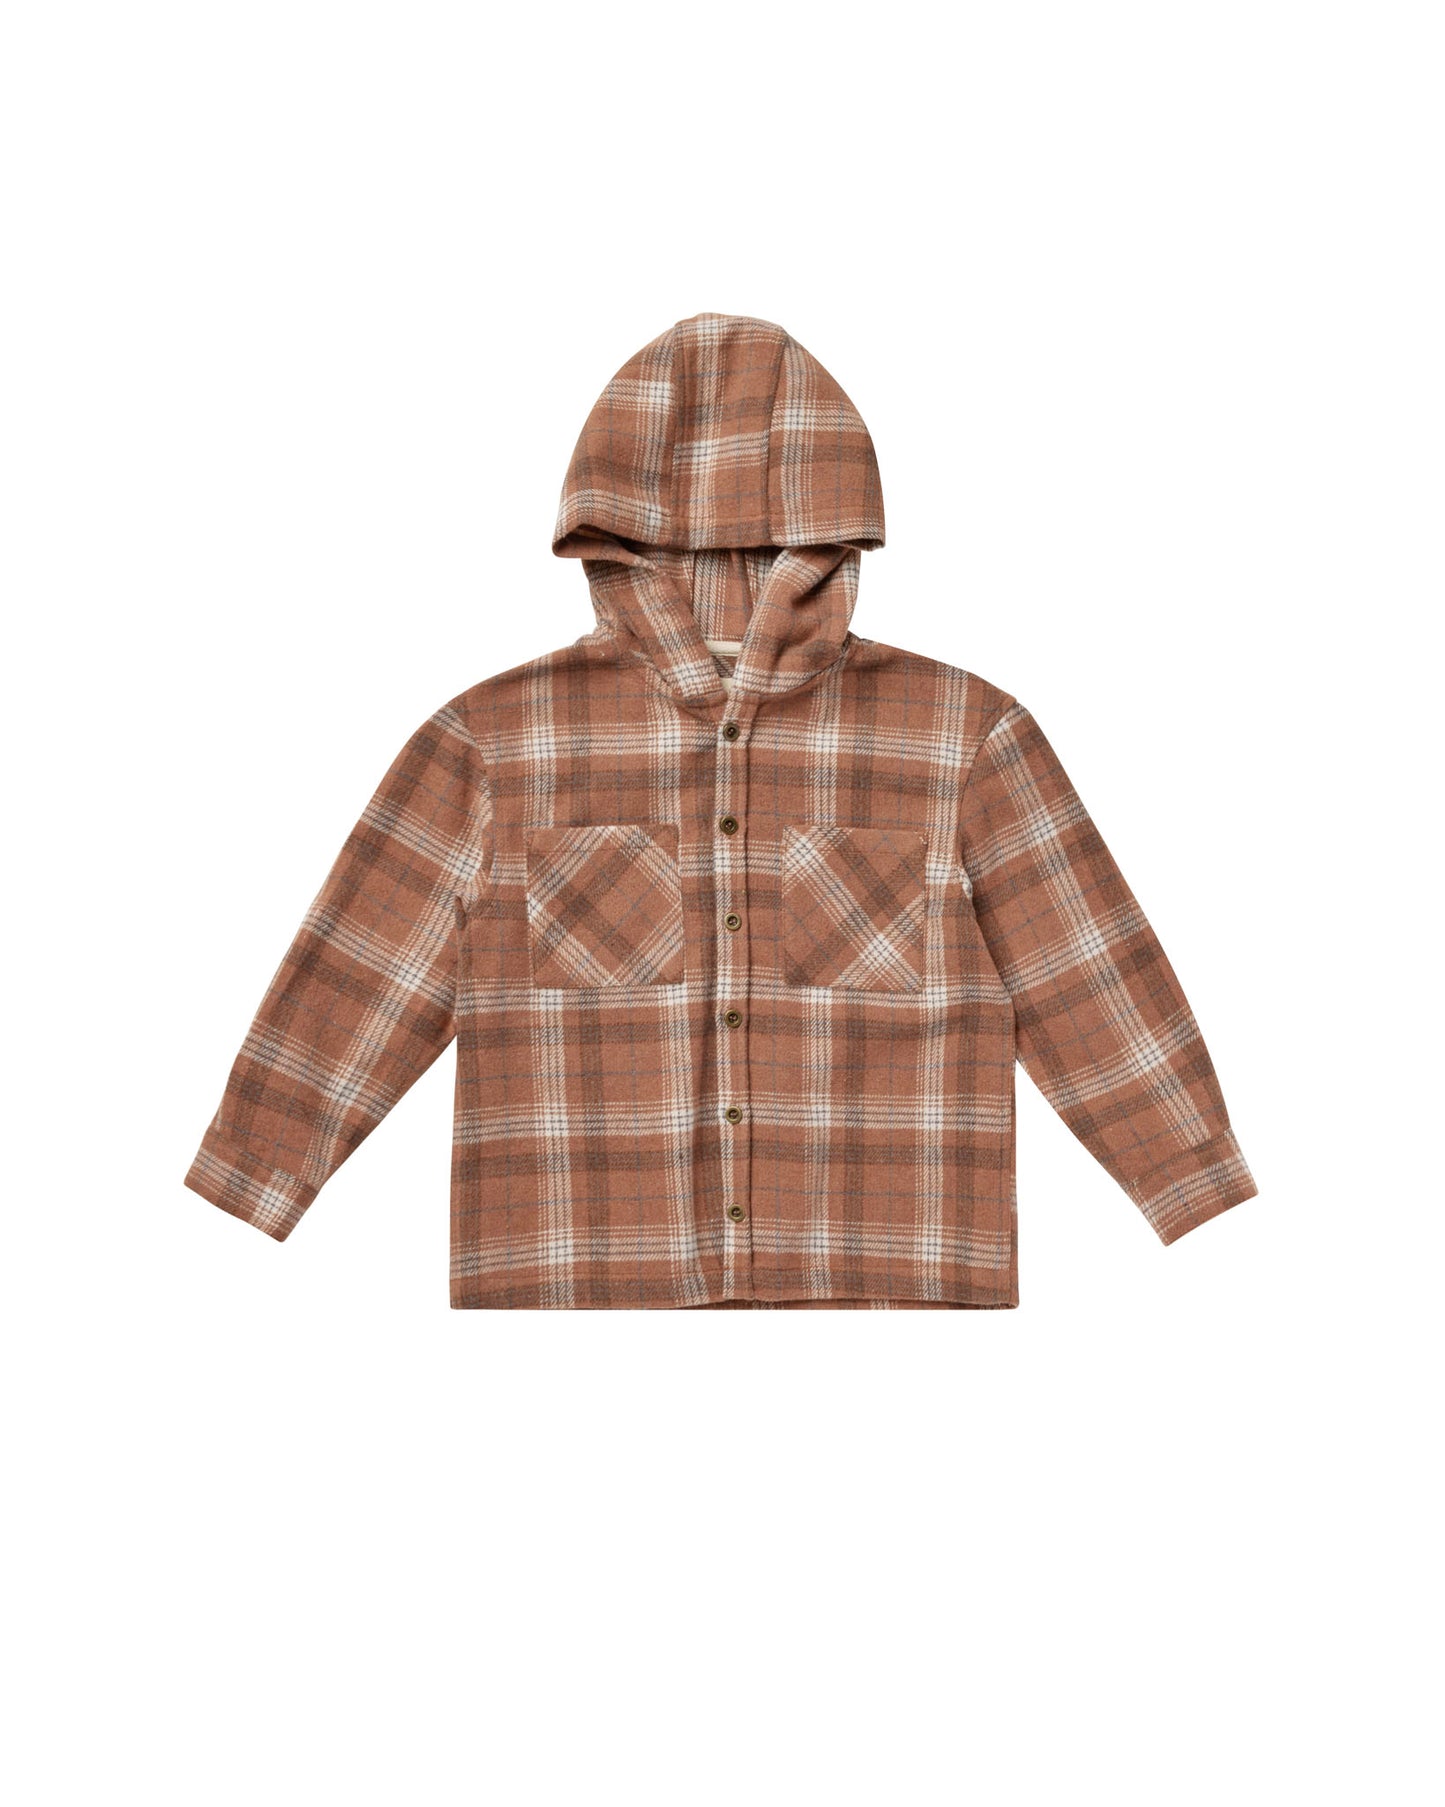 Rylee + Cru - Hooded Overshirt - Brown Plaid